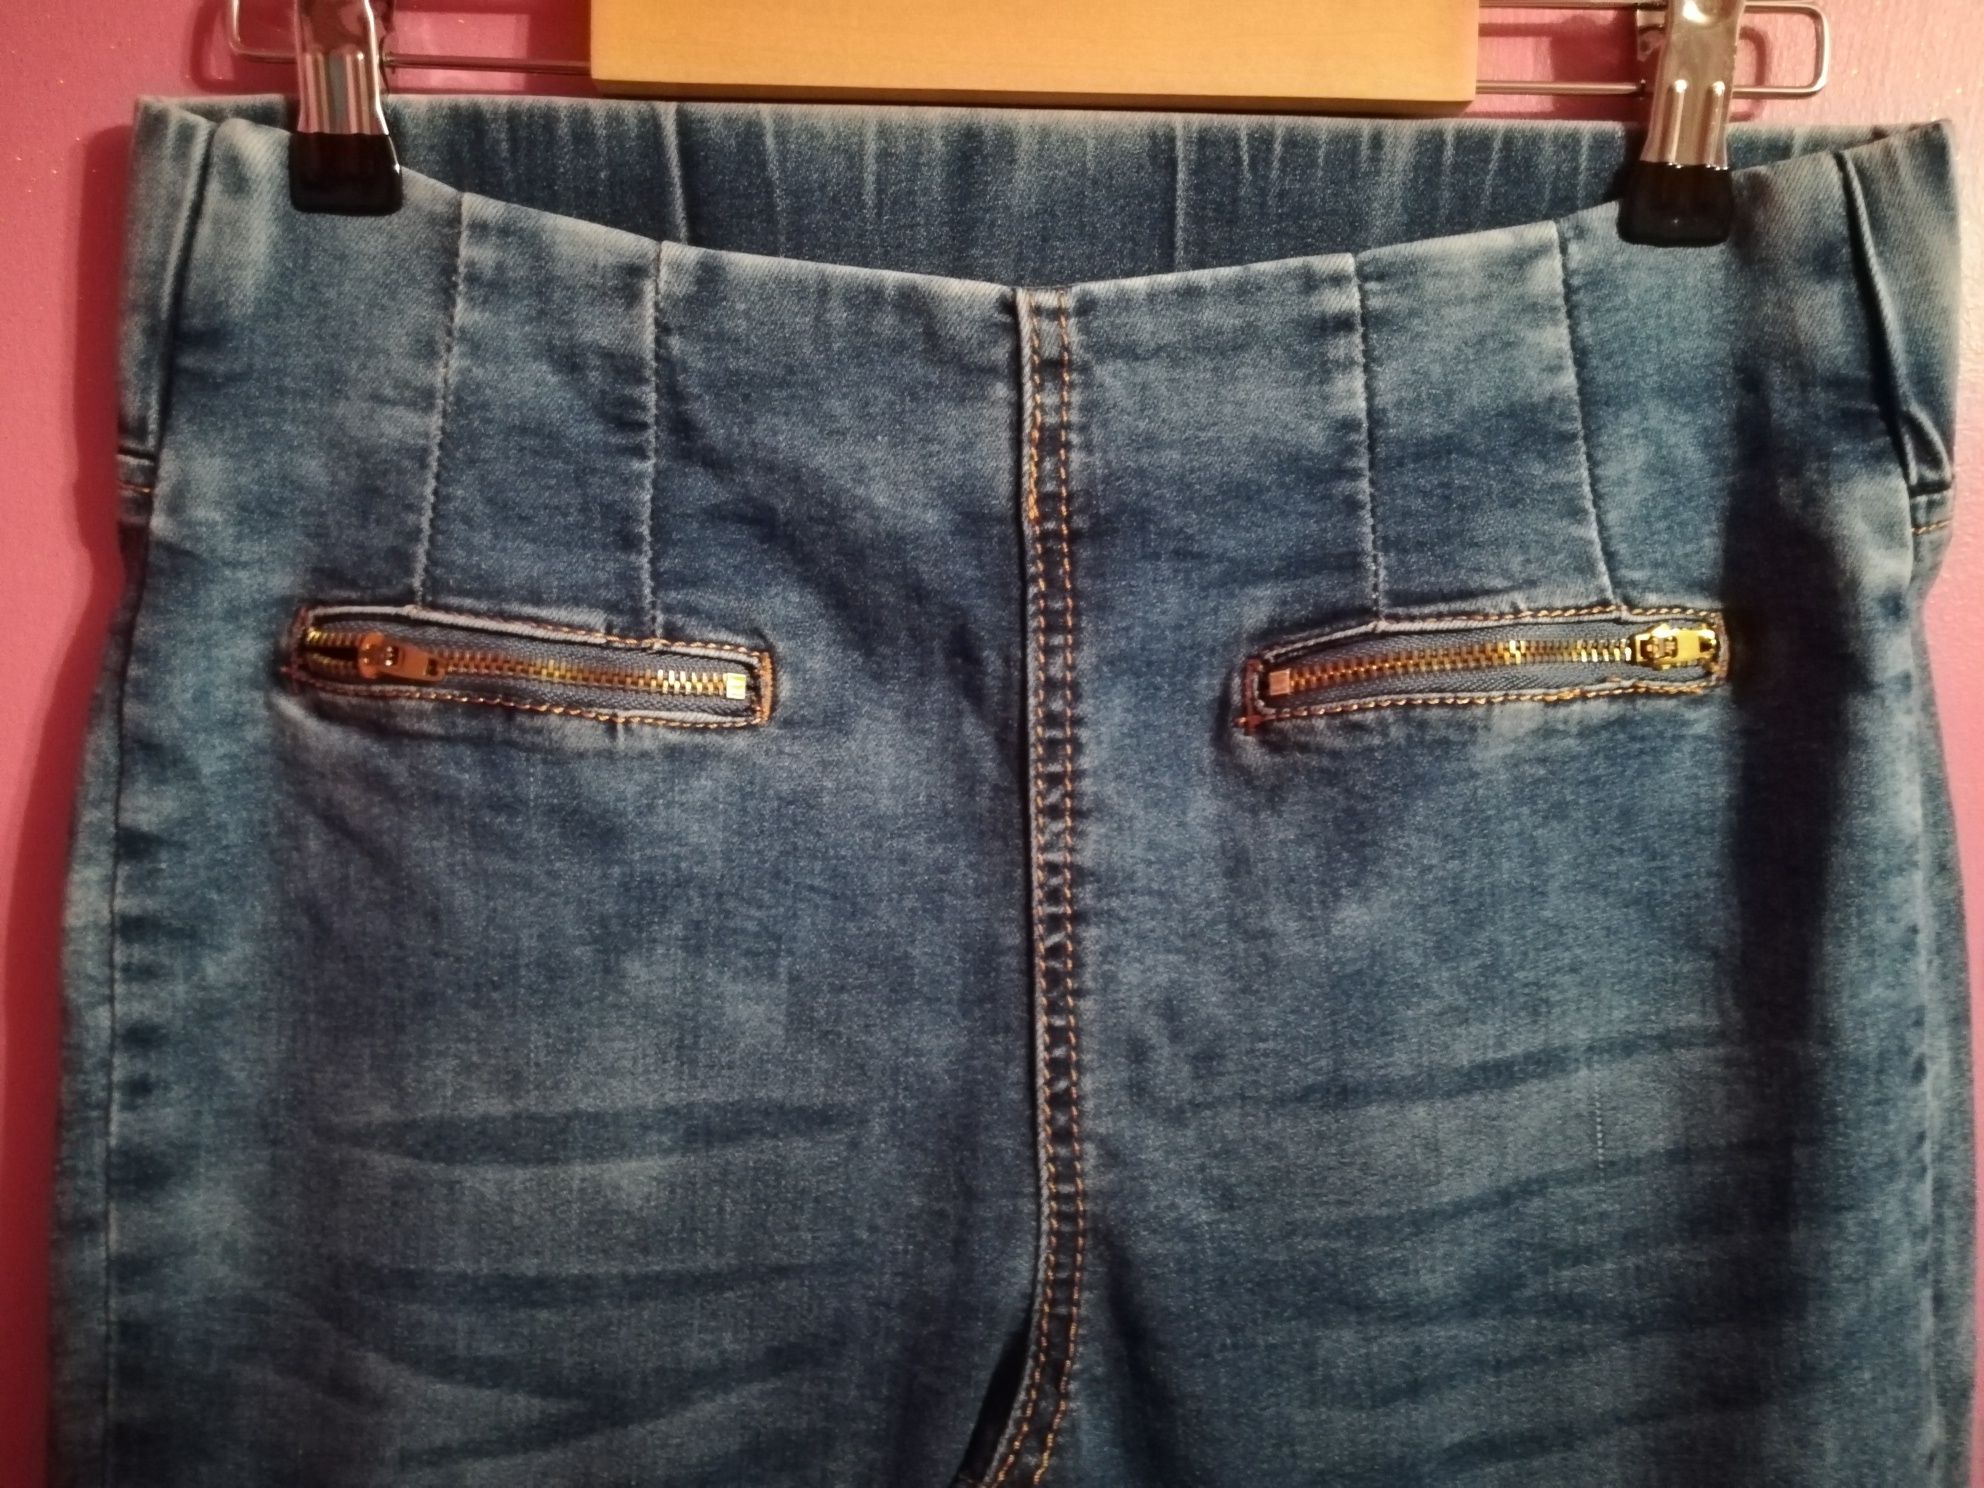 Spodnie damskie M/28 MISS RJ niebieskie jeans